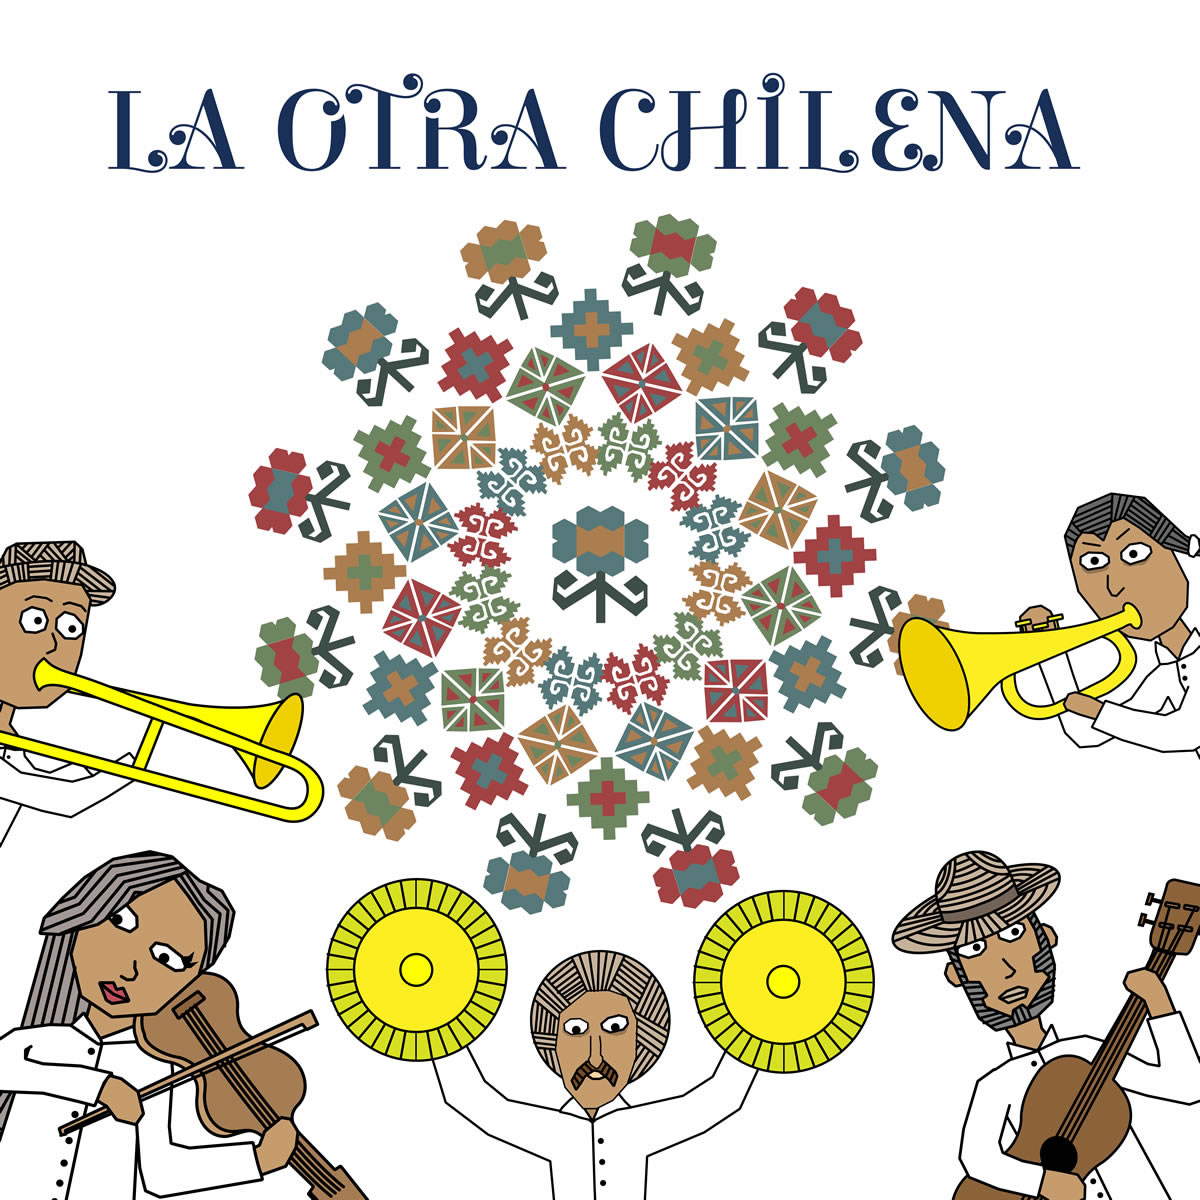 Fonograma "La otra chilena".